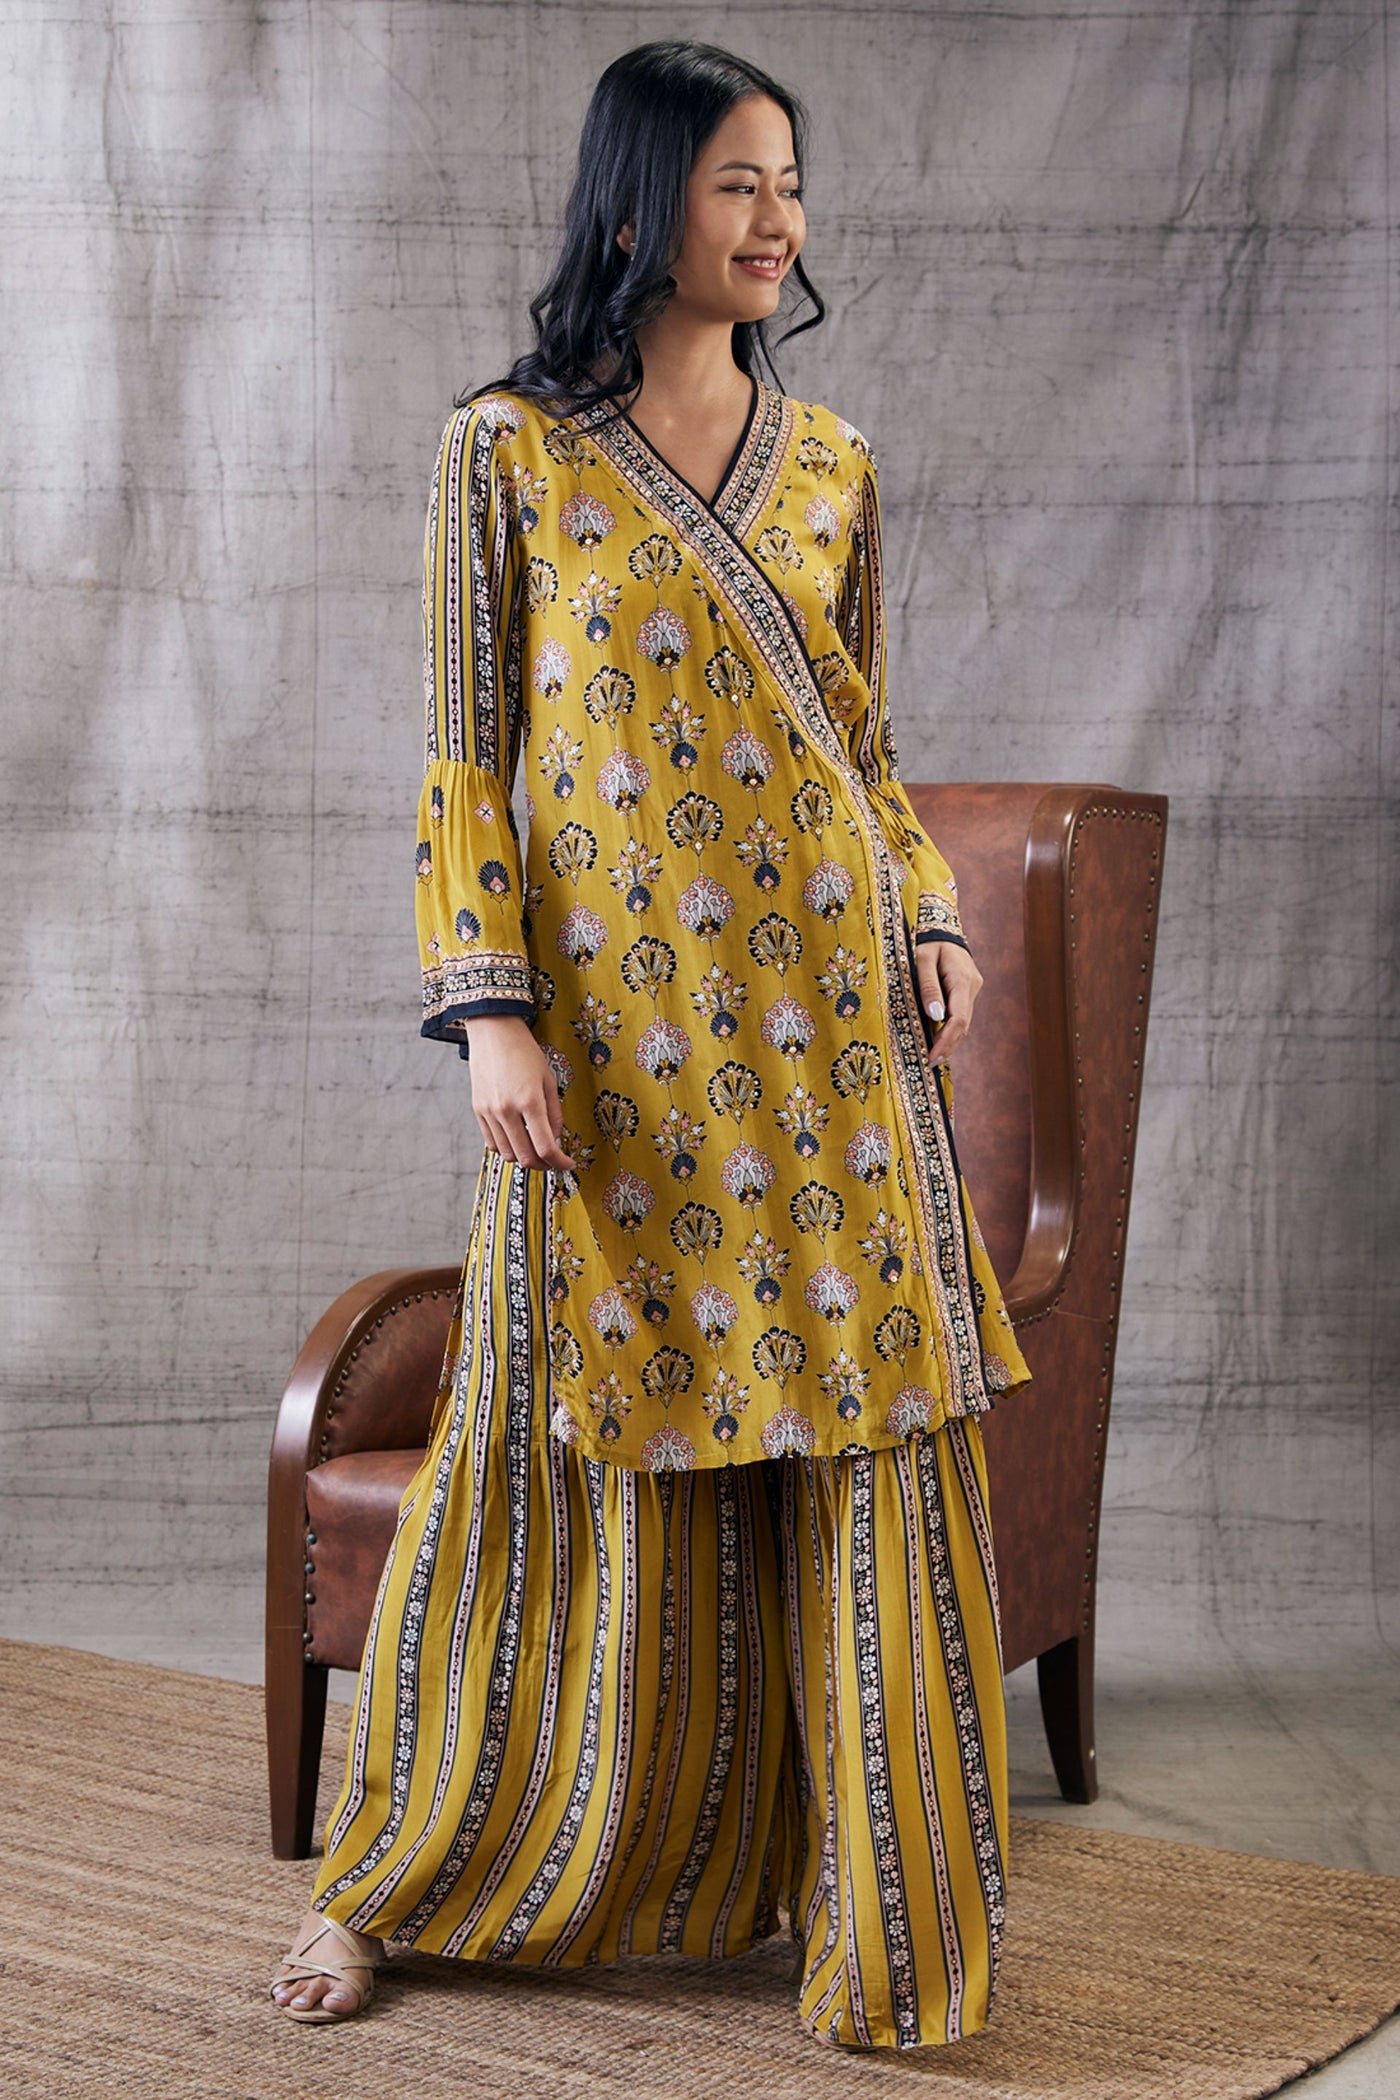 Sougat Paul Sarouk Embroidered Angarkha Set Indian designer wear online shopping melange singapore